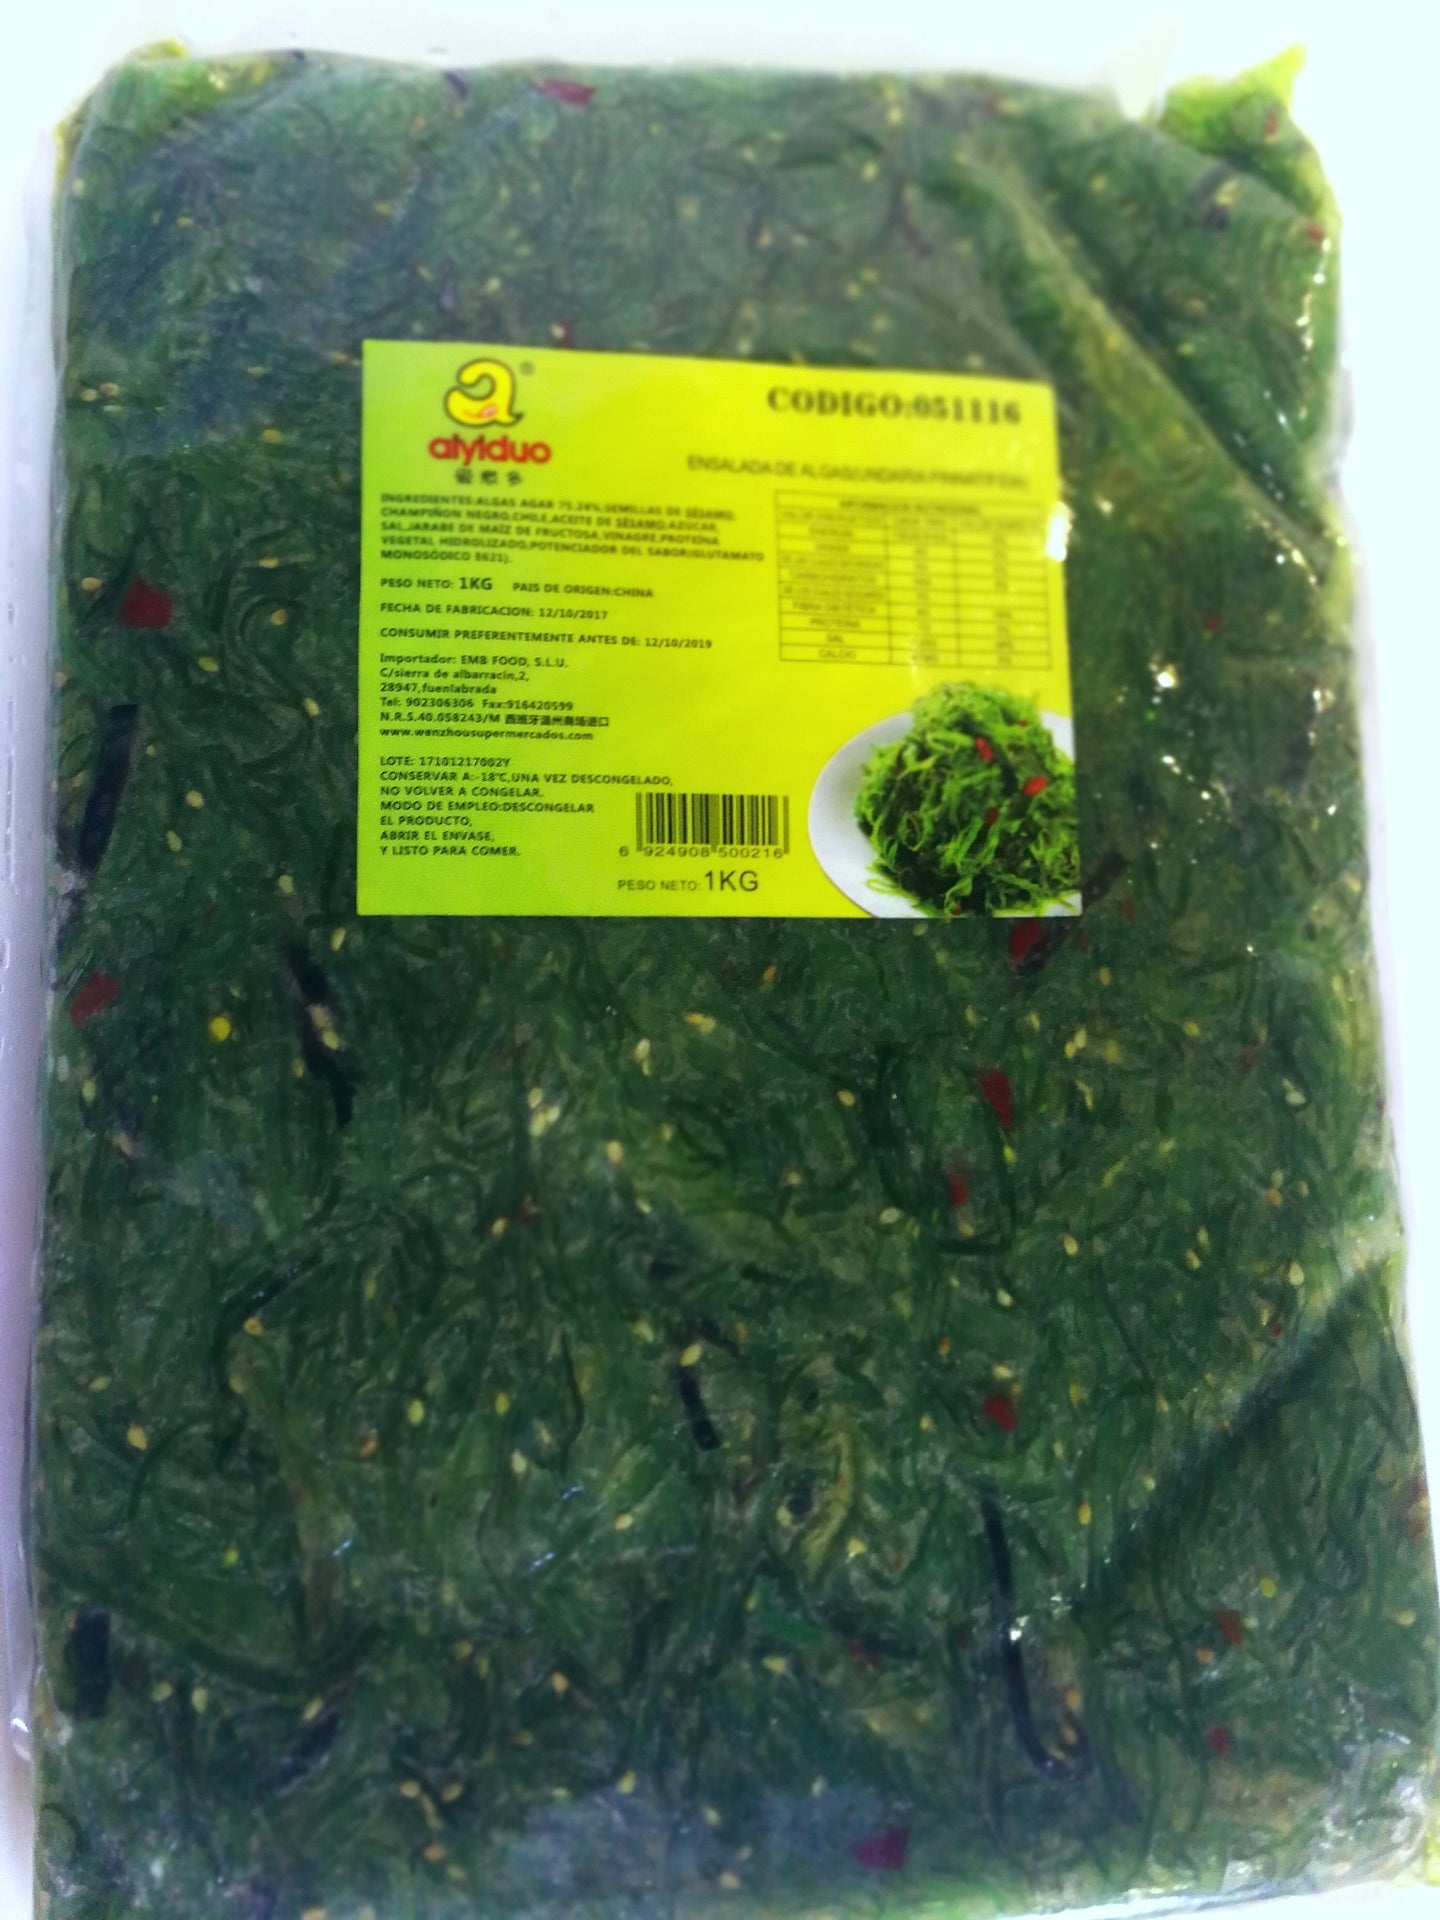 爱意多海藻沙拉1公斤(Ensalada de algas wakame 1kg)